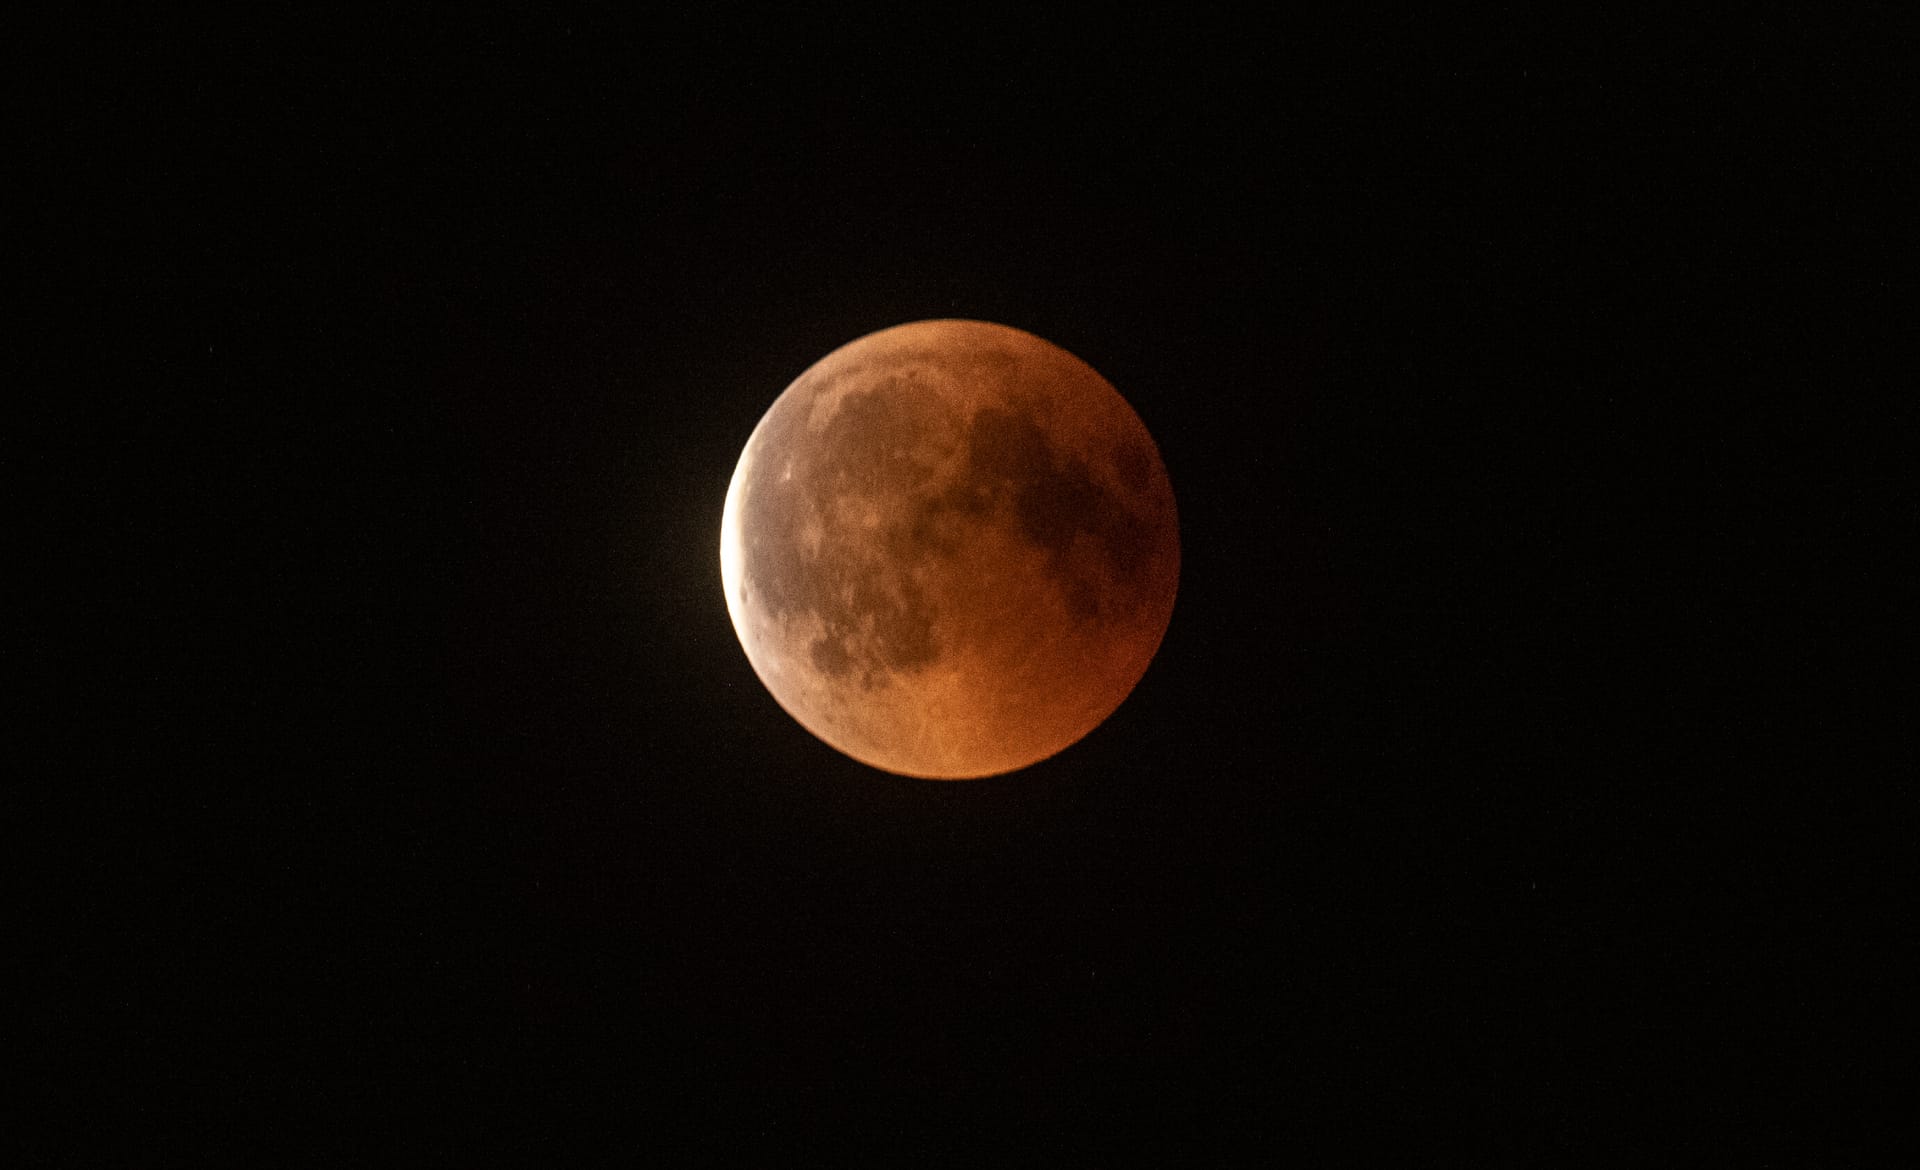 Mondfinsternis in Berlin: Rot leuchtet der Mond bei der totalen Mondfinsternis, während langsam die Dunkelheit abnimmt.